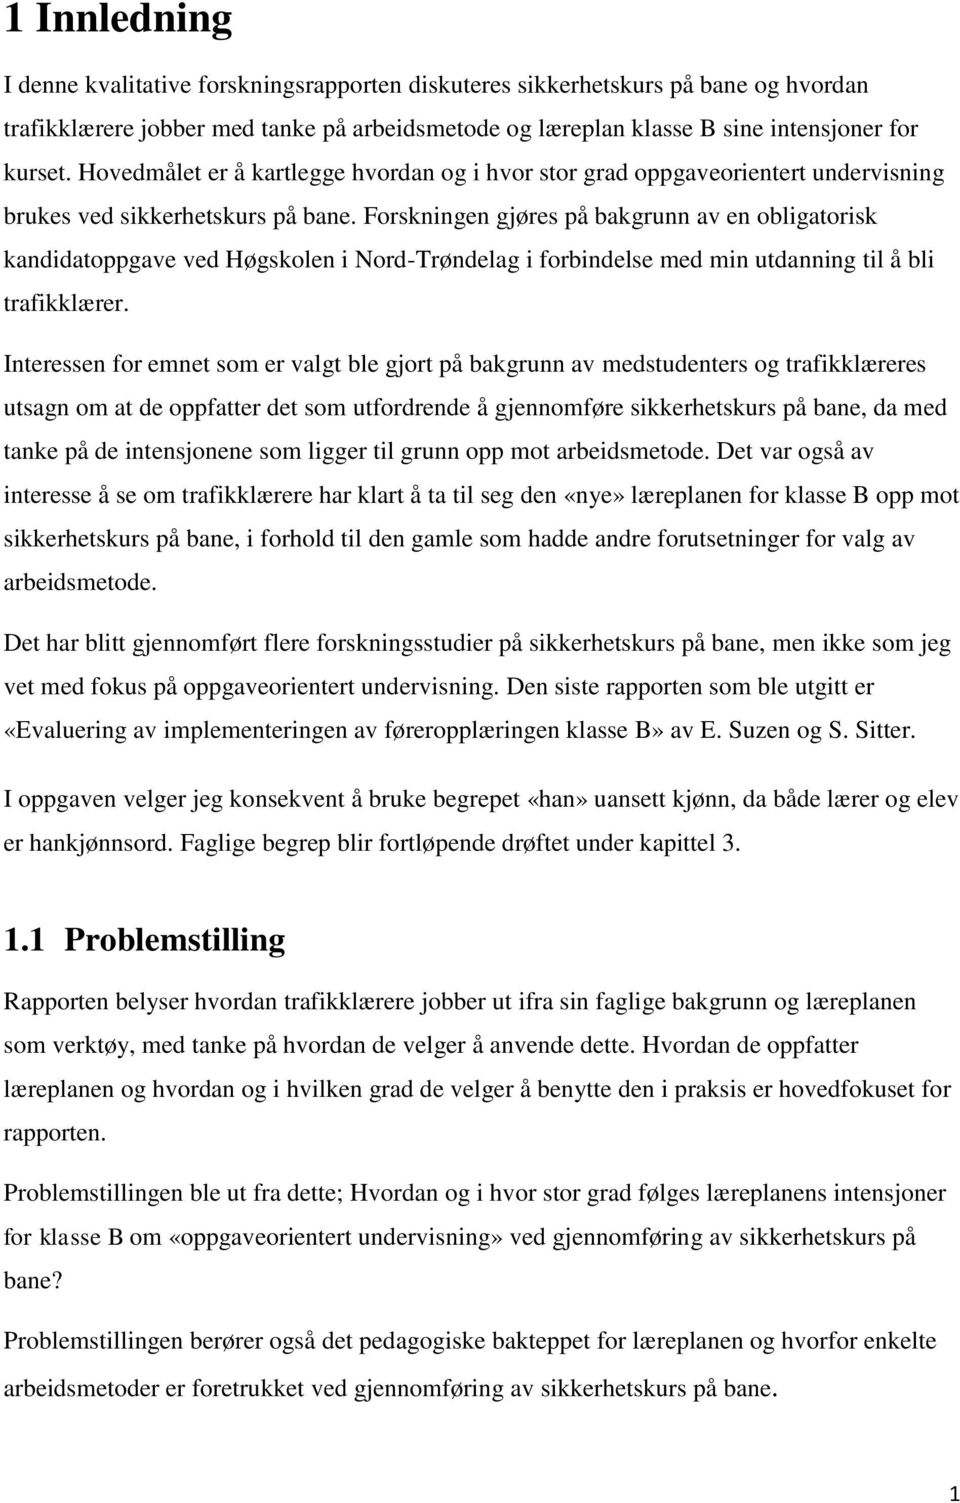 Forskningen gjøres på bakgrunn av en obligatorisk kandidatoppgave ved Høgskolen i Nord-Trøndelag i forbindelse med min utdanning til å bli trafikklærer.